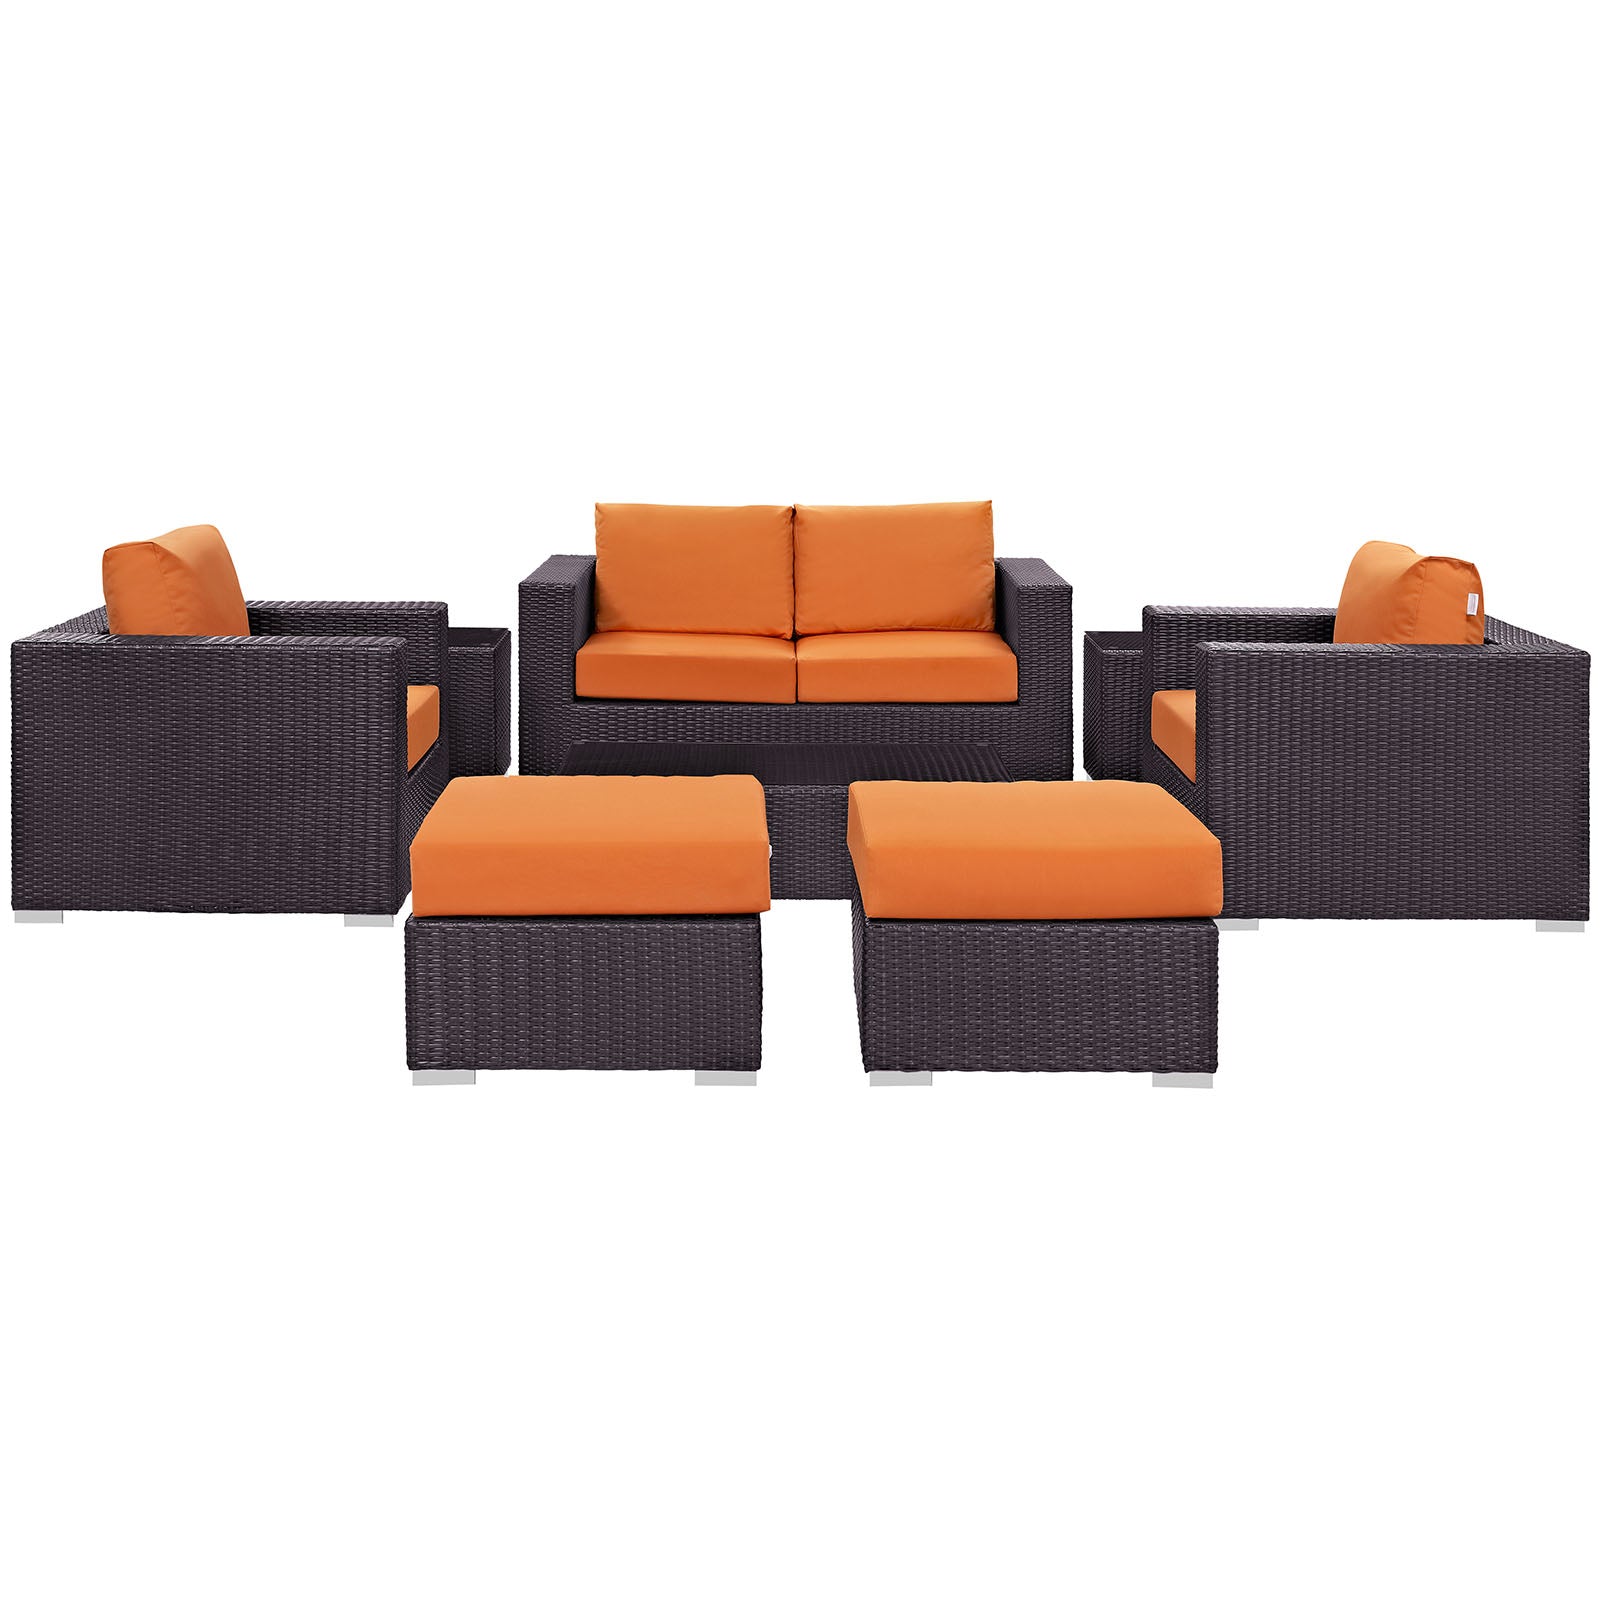 Modway Outdoor Conversation Sets - Convene 8 Piece Outdoor Patio Sofa Set Espresso Orange